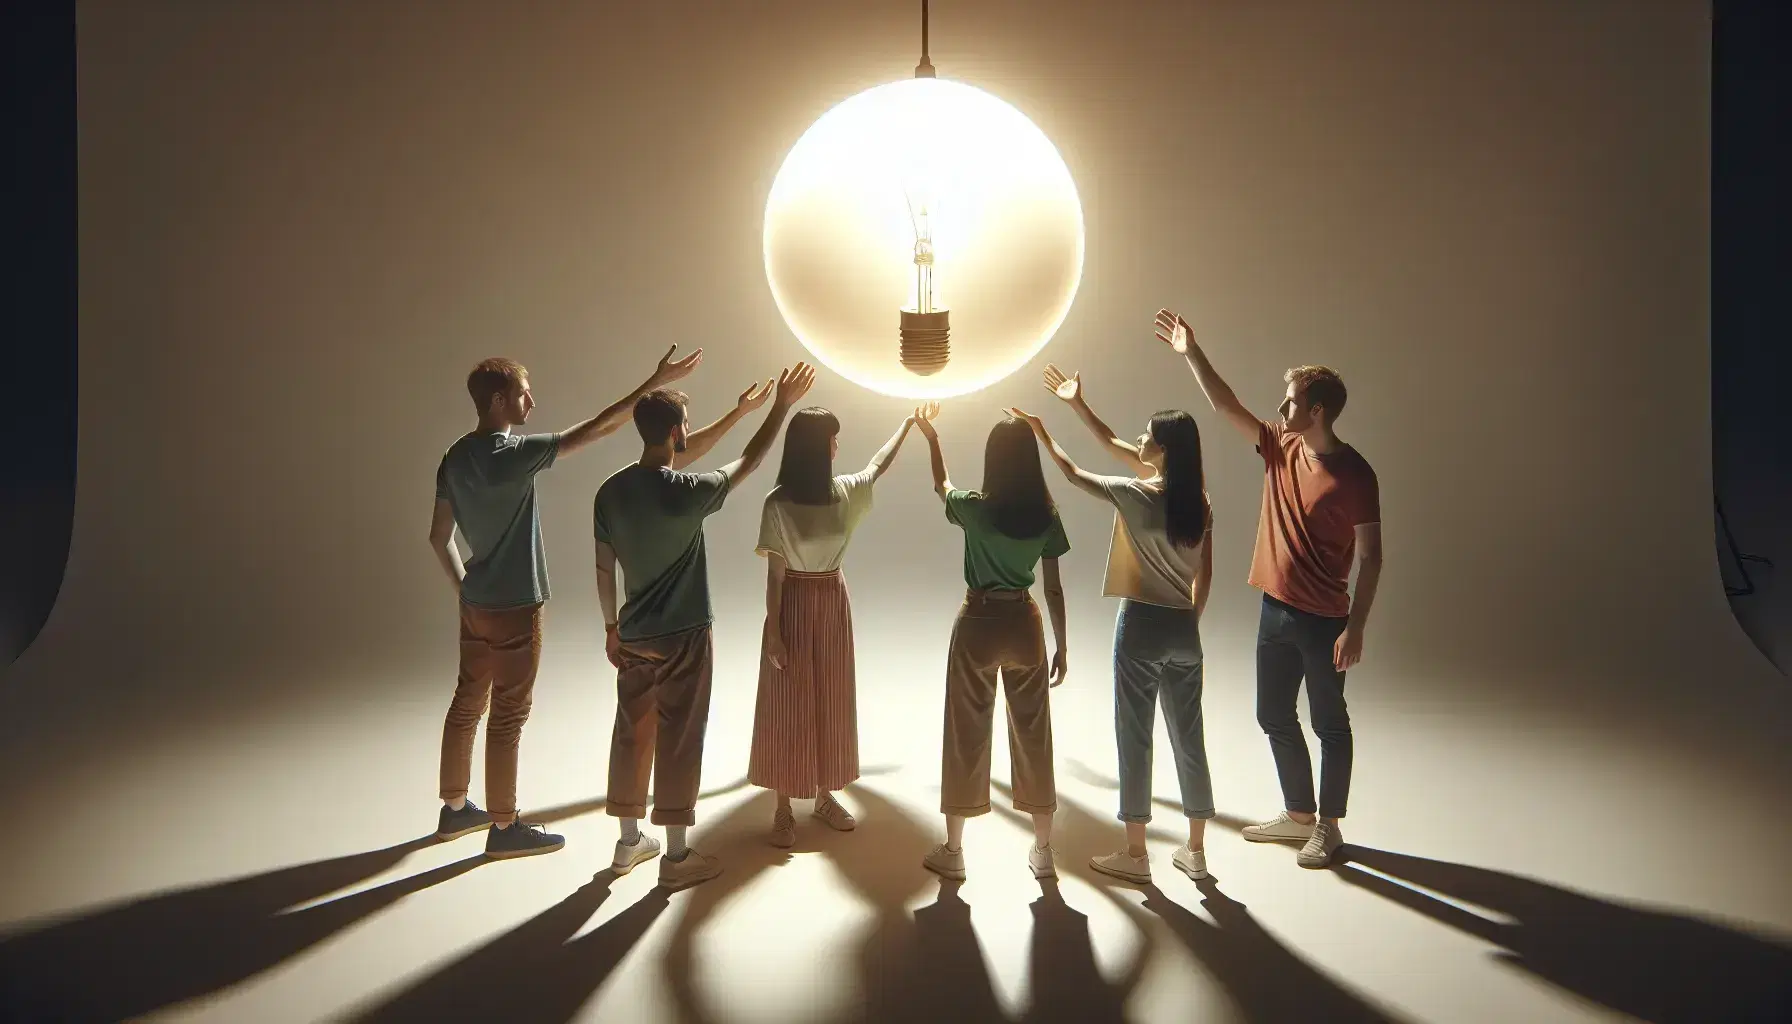 Grupo de cinco personas de diversas edades extendiendo la mano hacia una bombilla iluminada sin cables en un fondo claro.